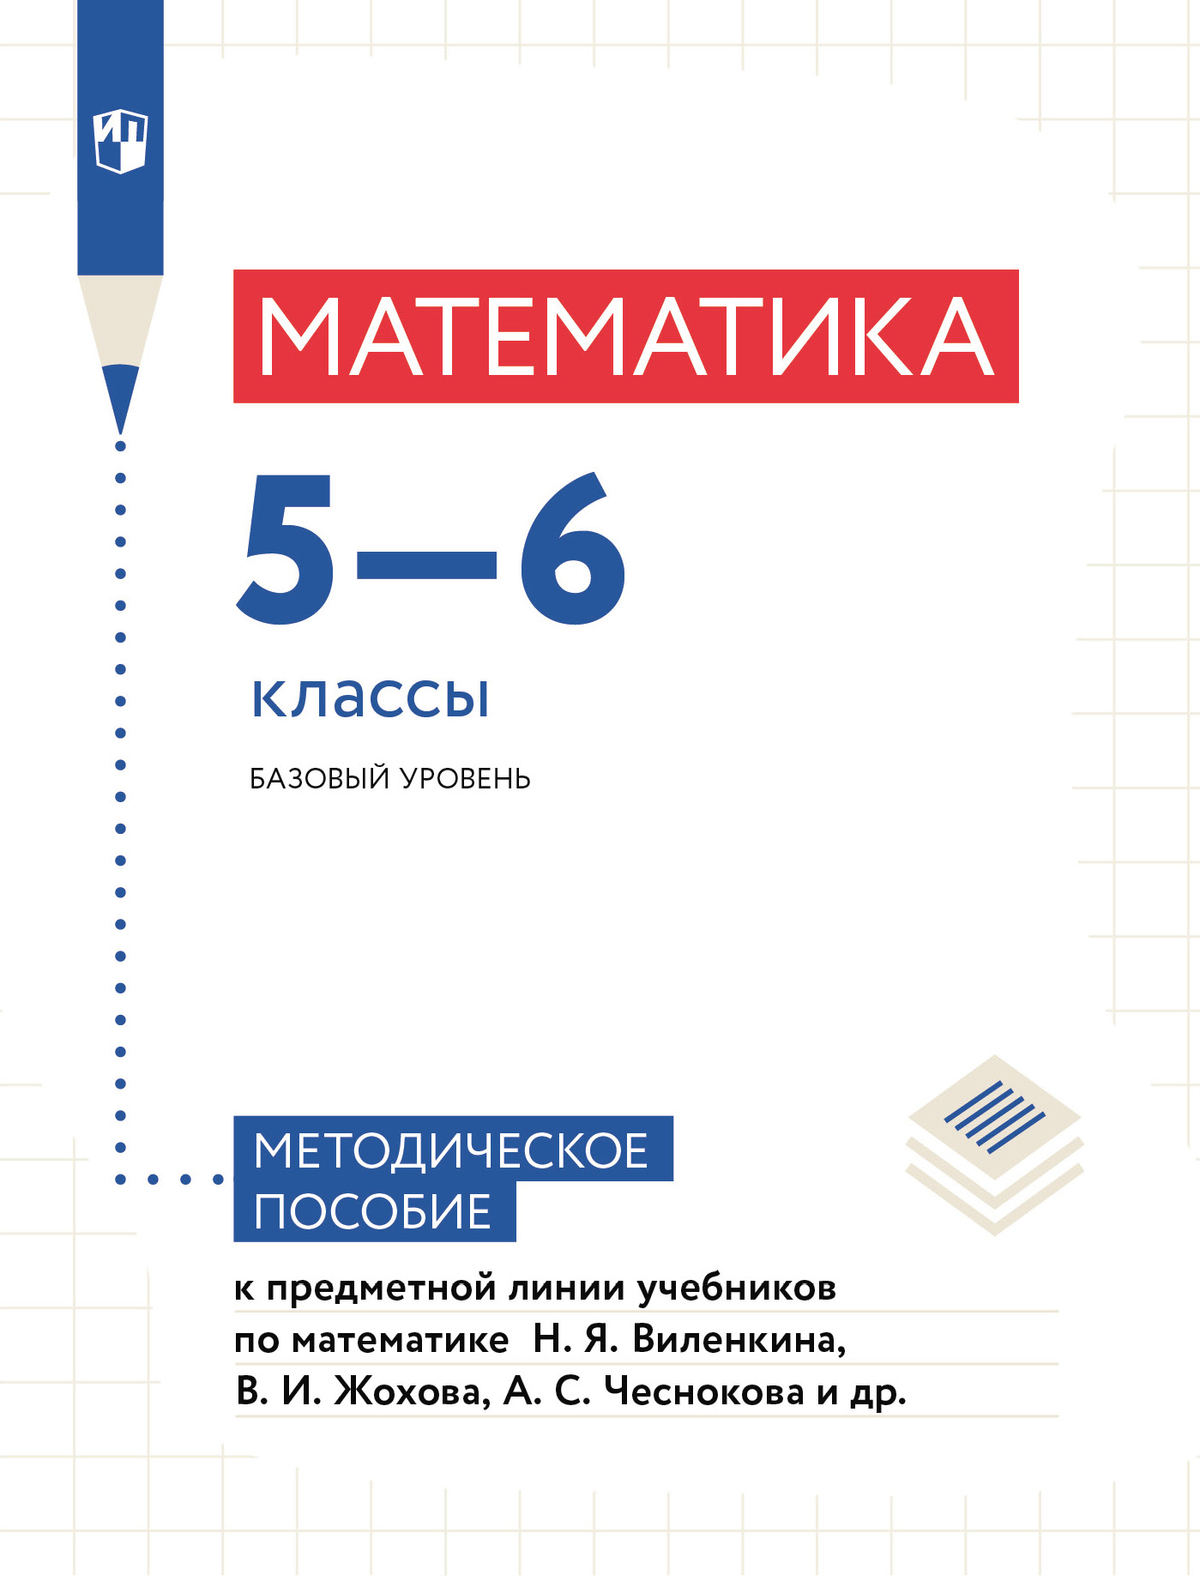 Математика. Методические рекомендации. 5-6 классы 1